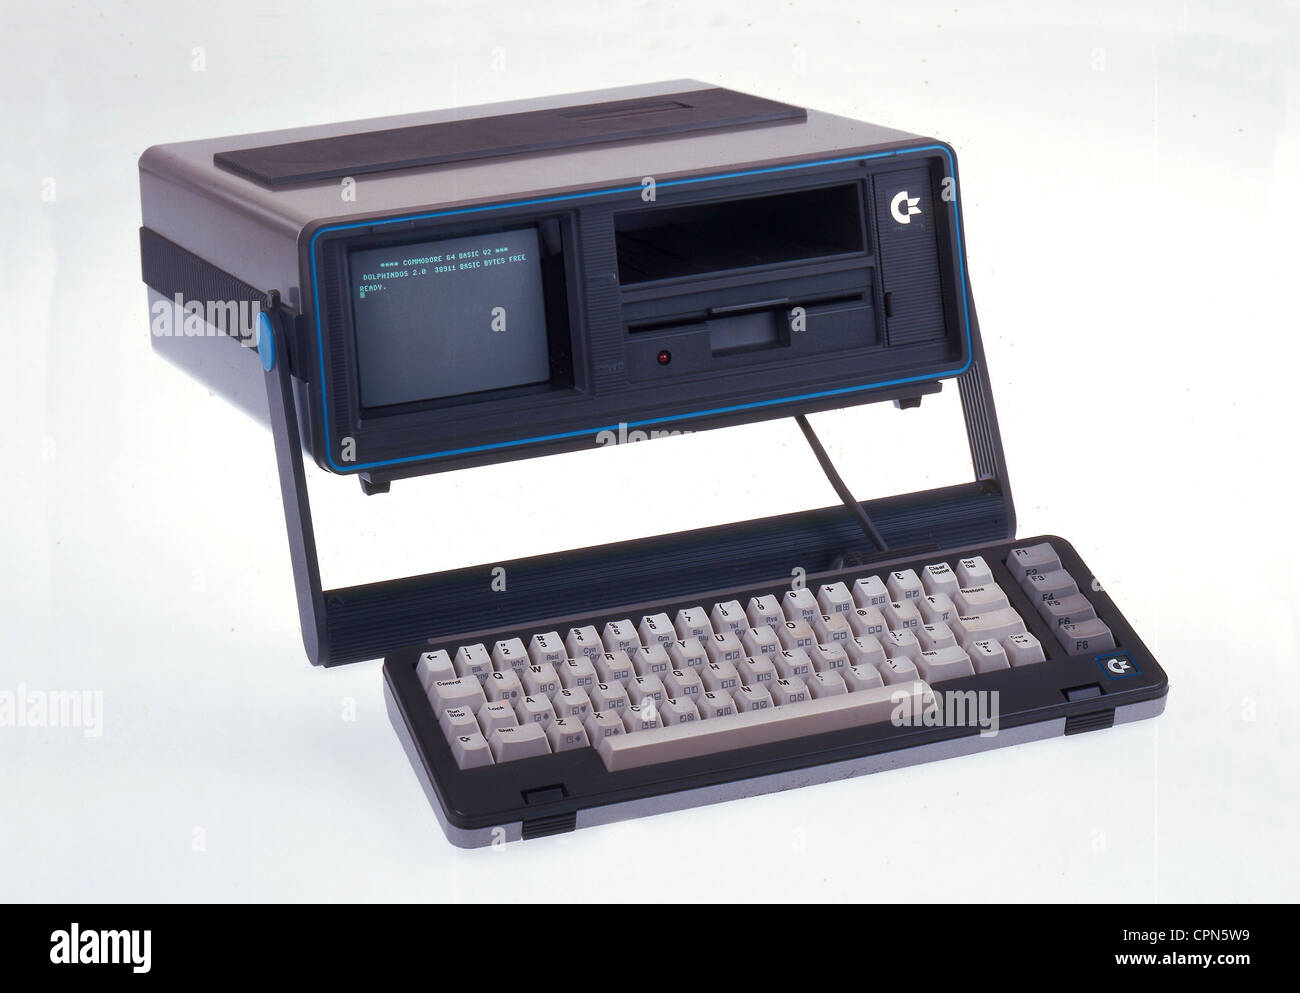 Unghie Nuova OVP 10 dischetti 5,25" Polaroid 2s/2d 48tpi per Commodore C 64 128 